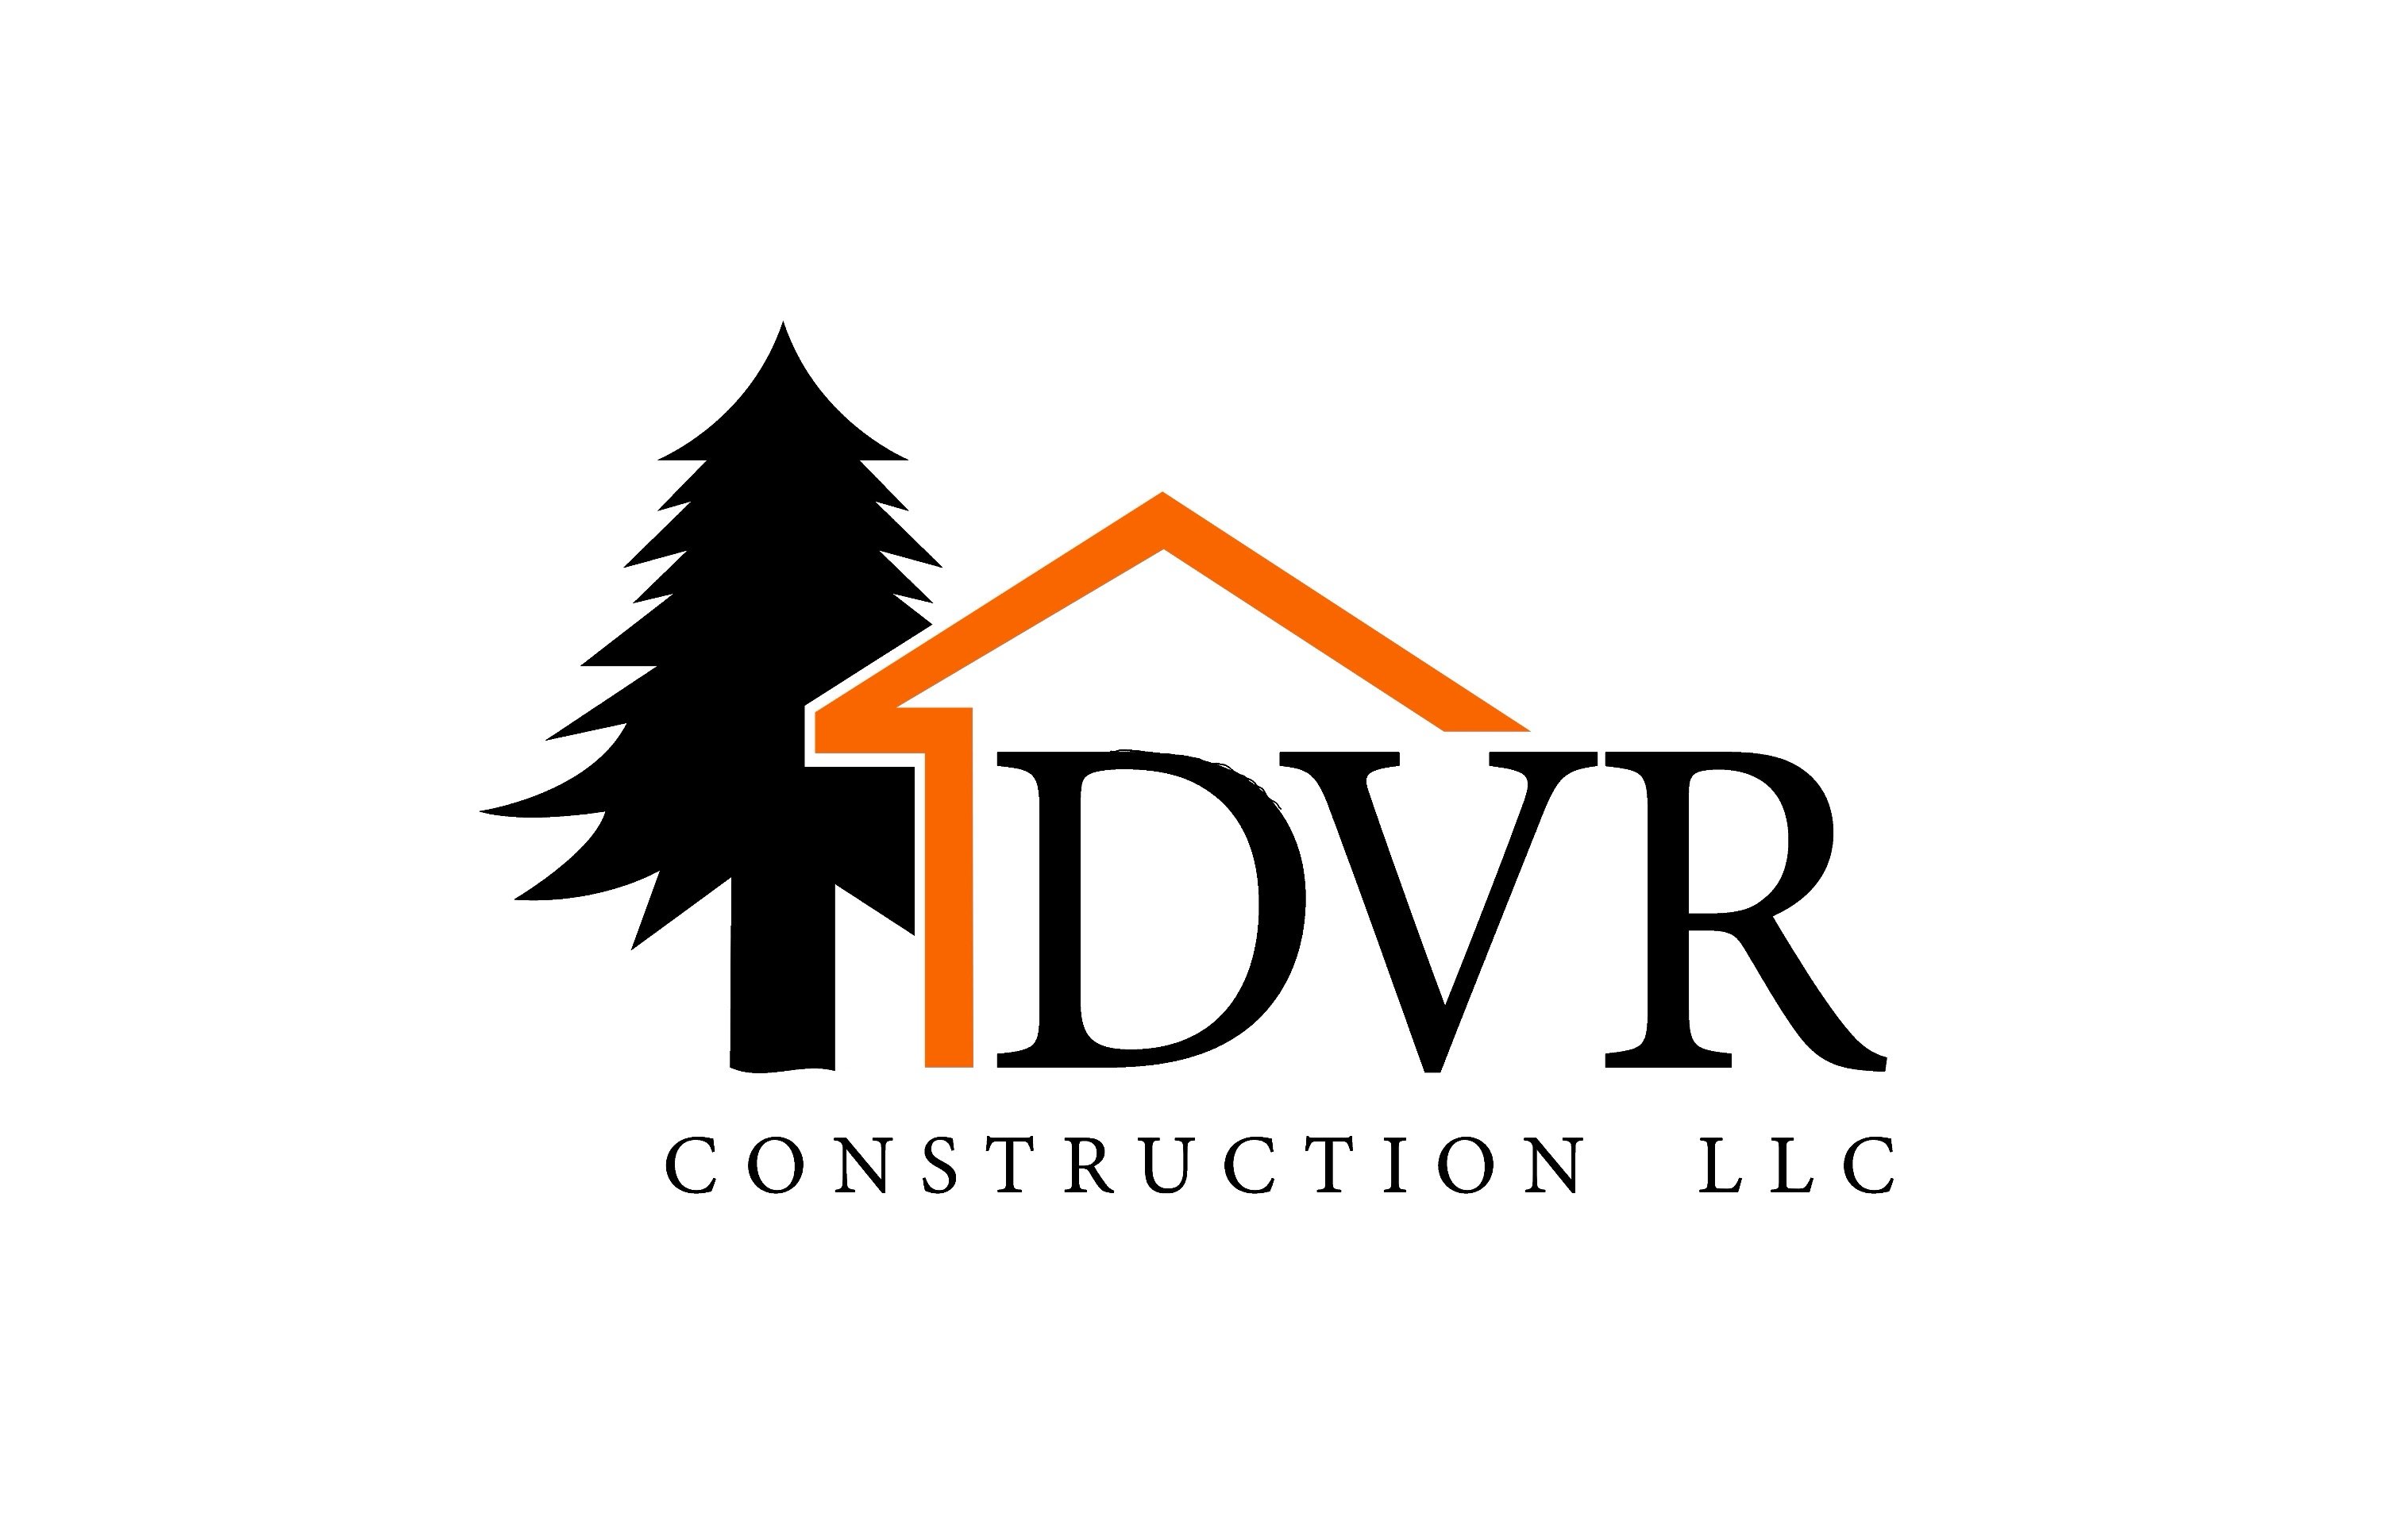 DVR Construction LLC Logo